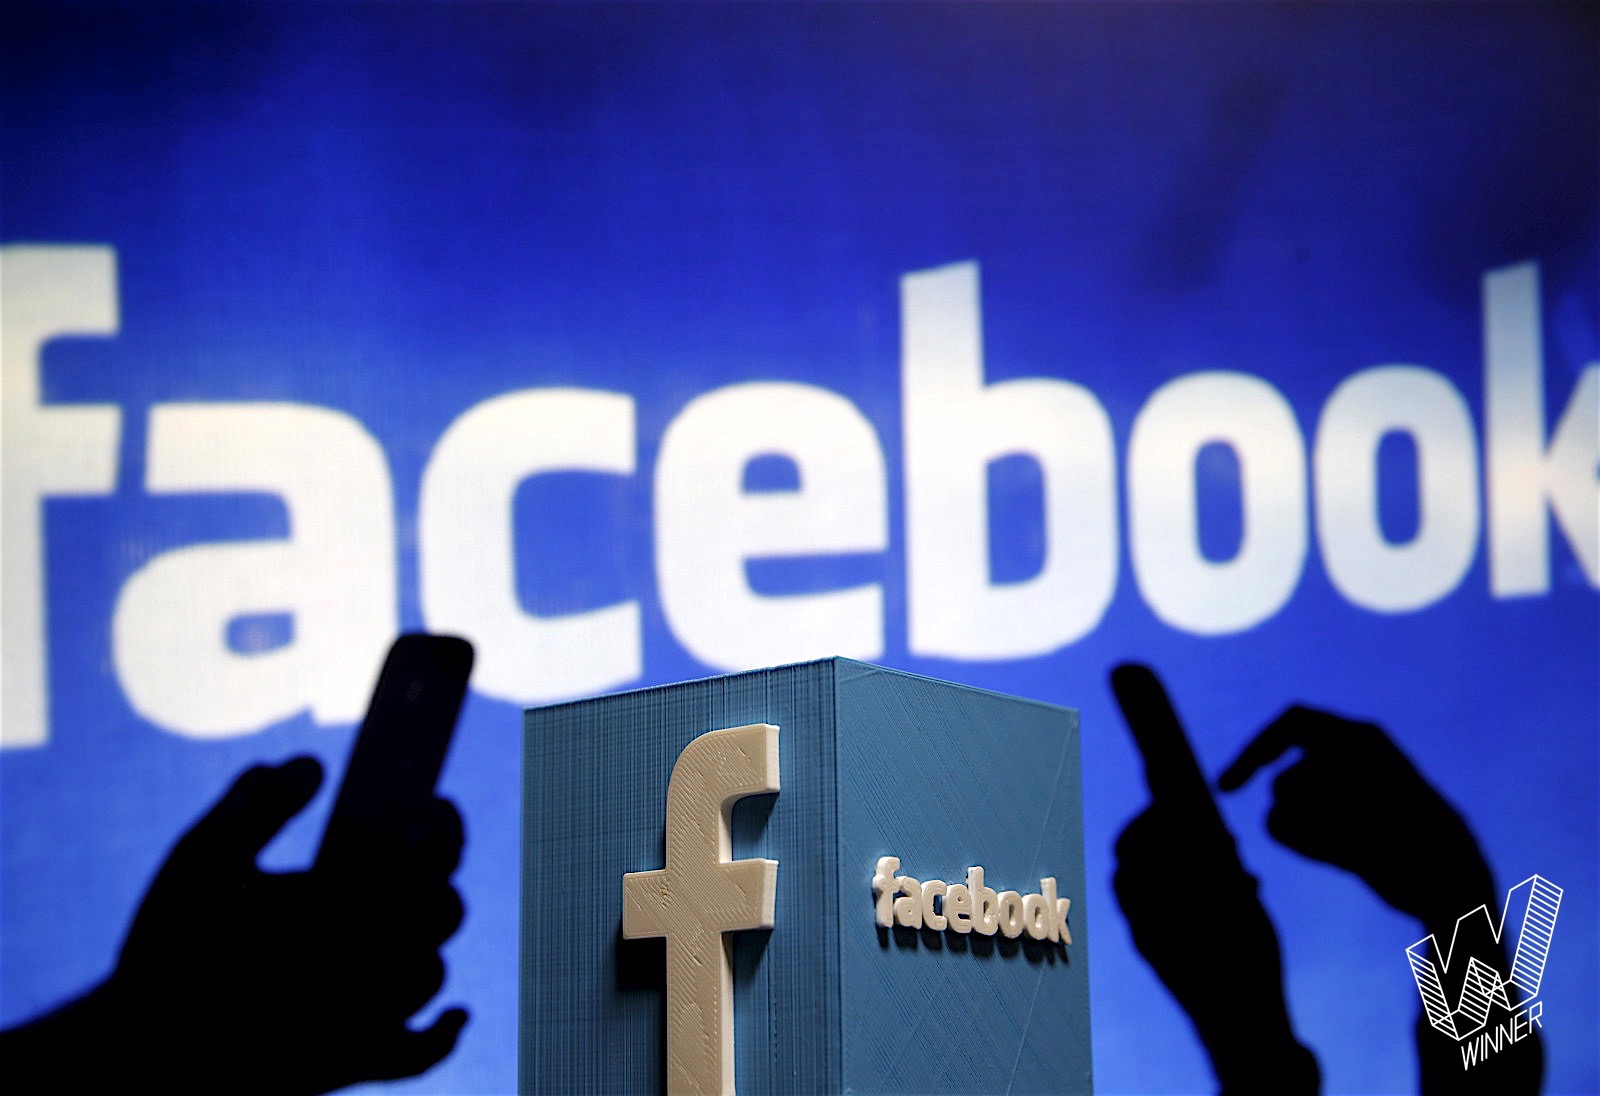 Năm 2016, Facebook muốn nuốt chửng cả thế giới